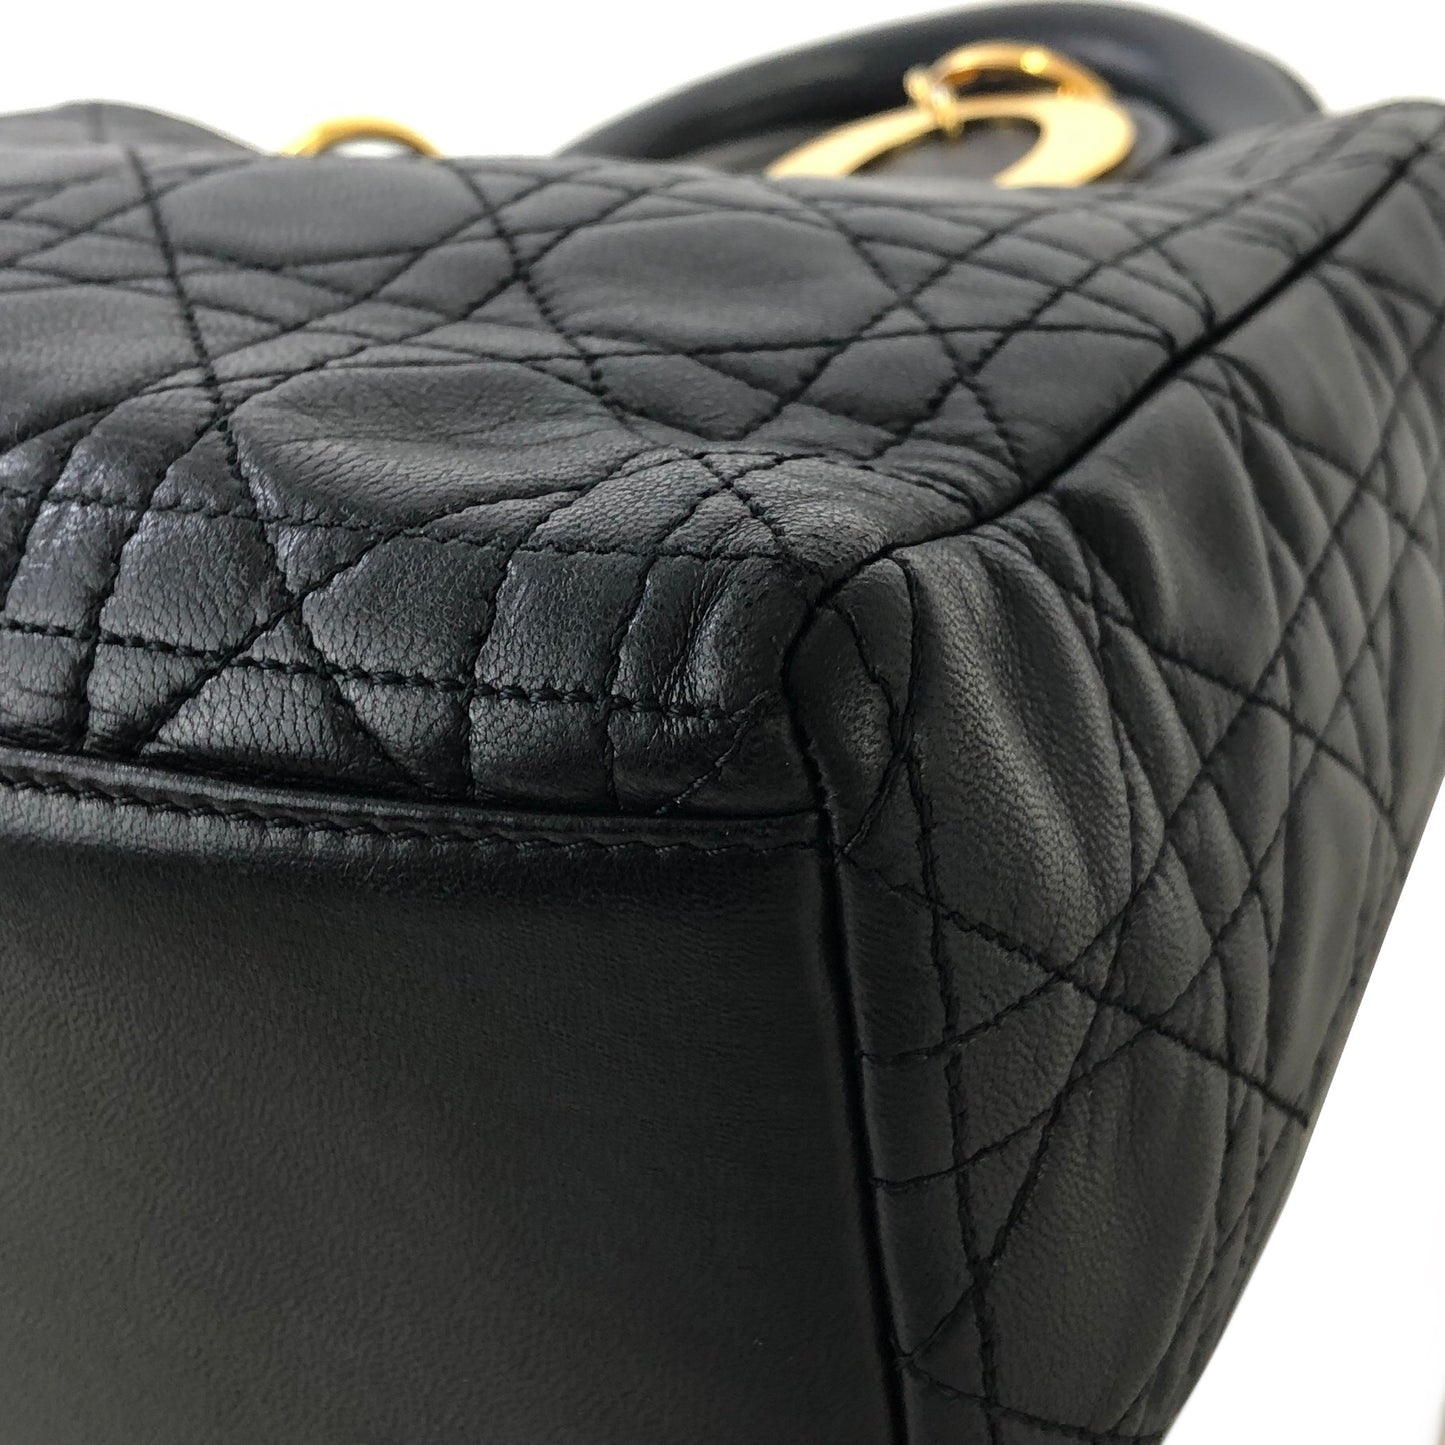 Christian Dior Cannage Ladydior Leather Two-way Handbag Shoulder bag Black Vintage khzzs3